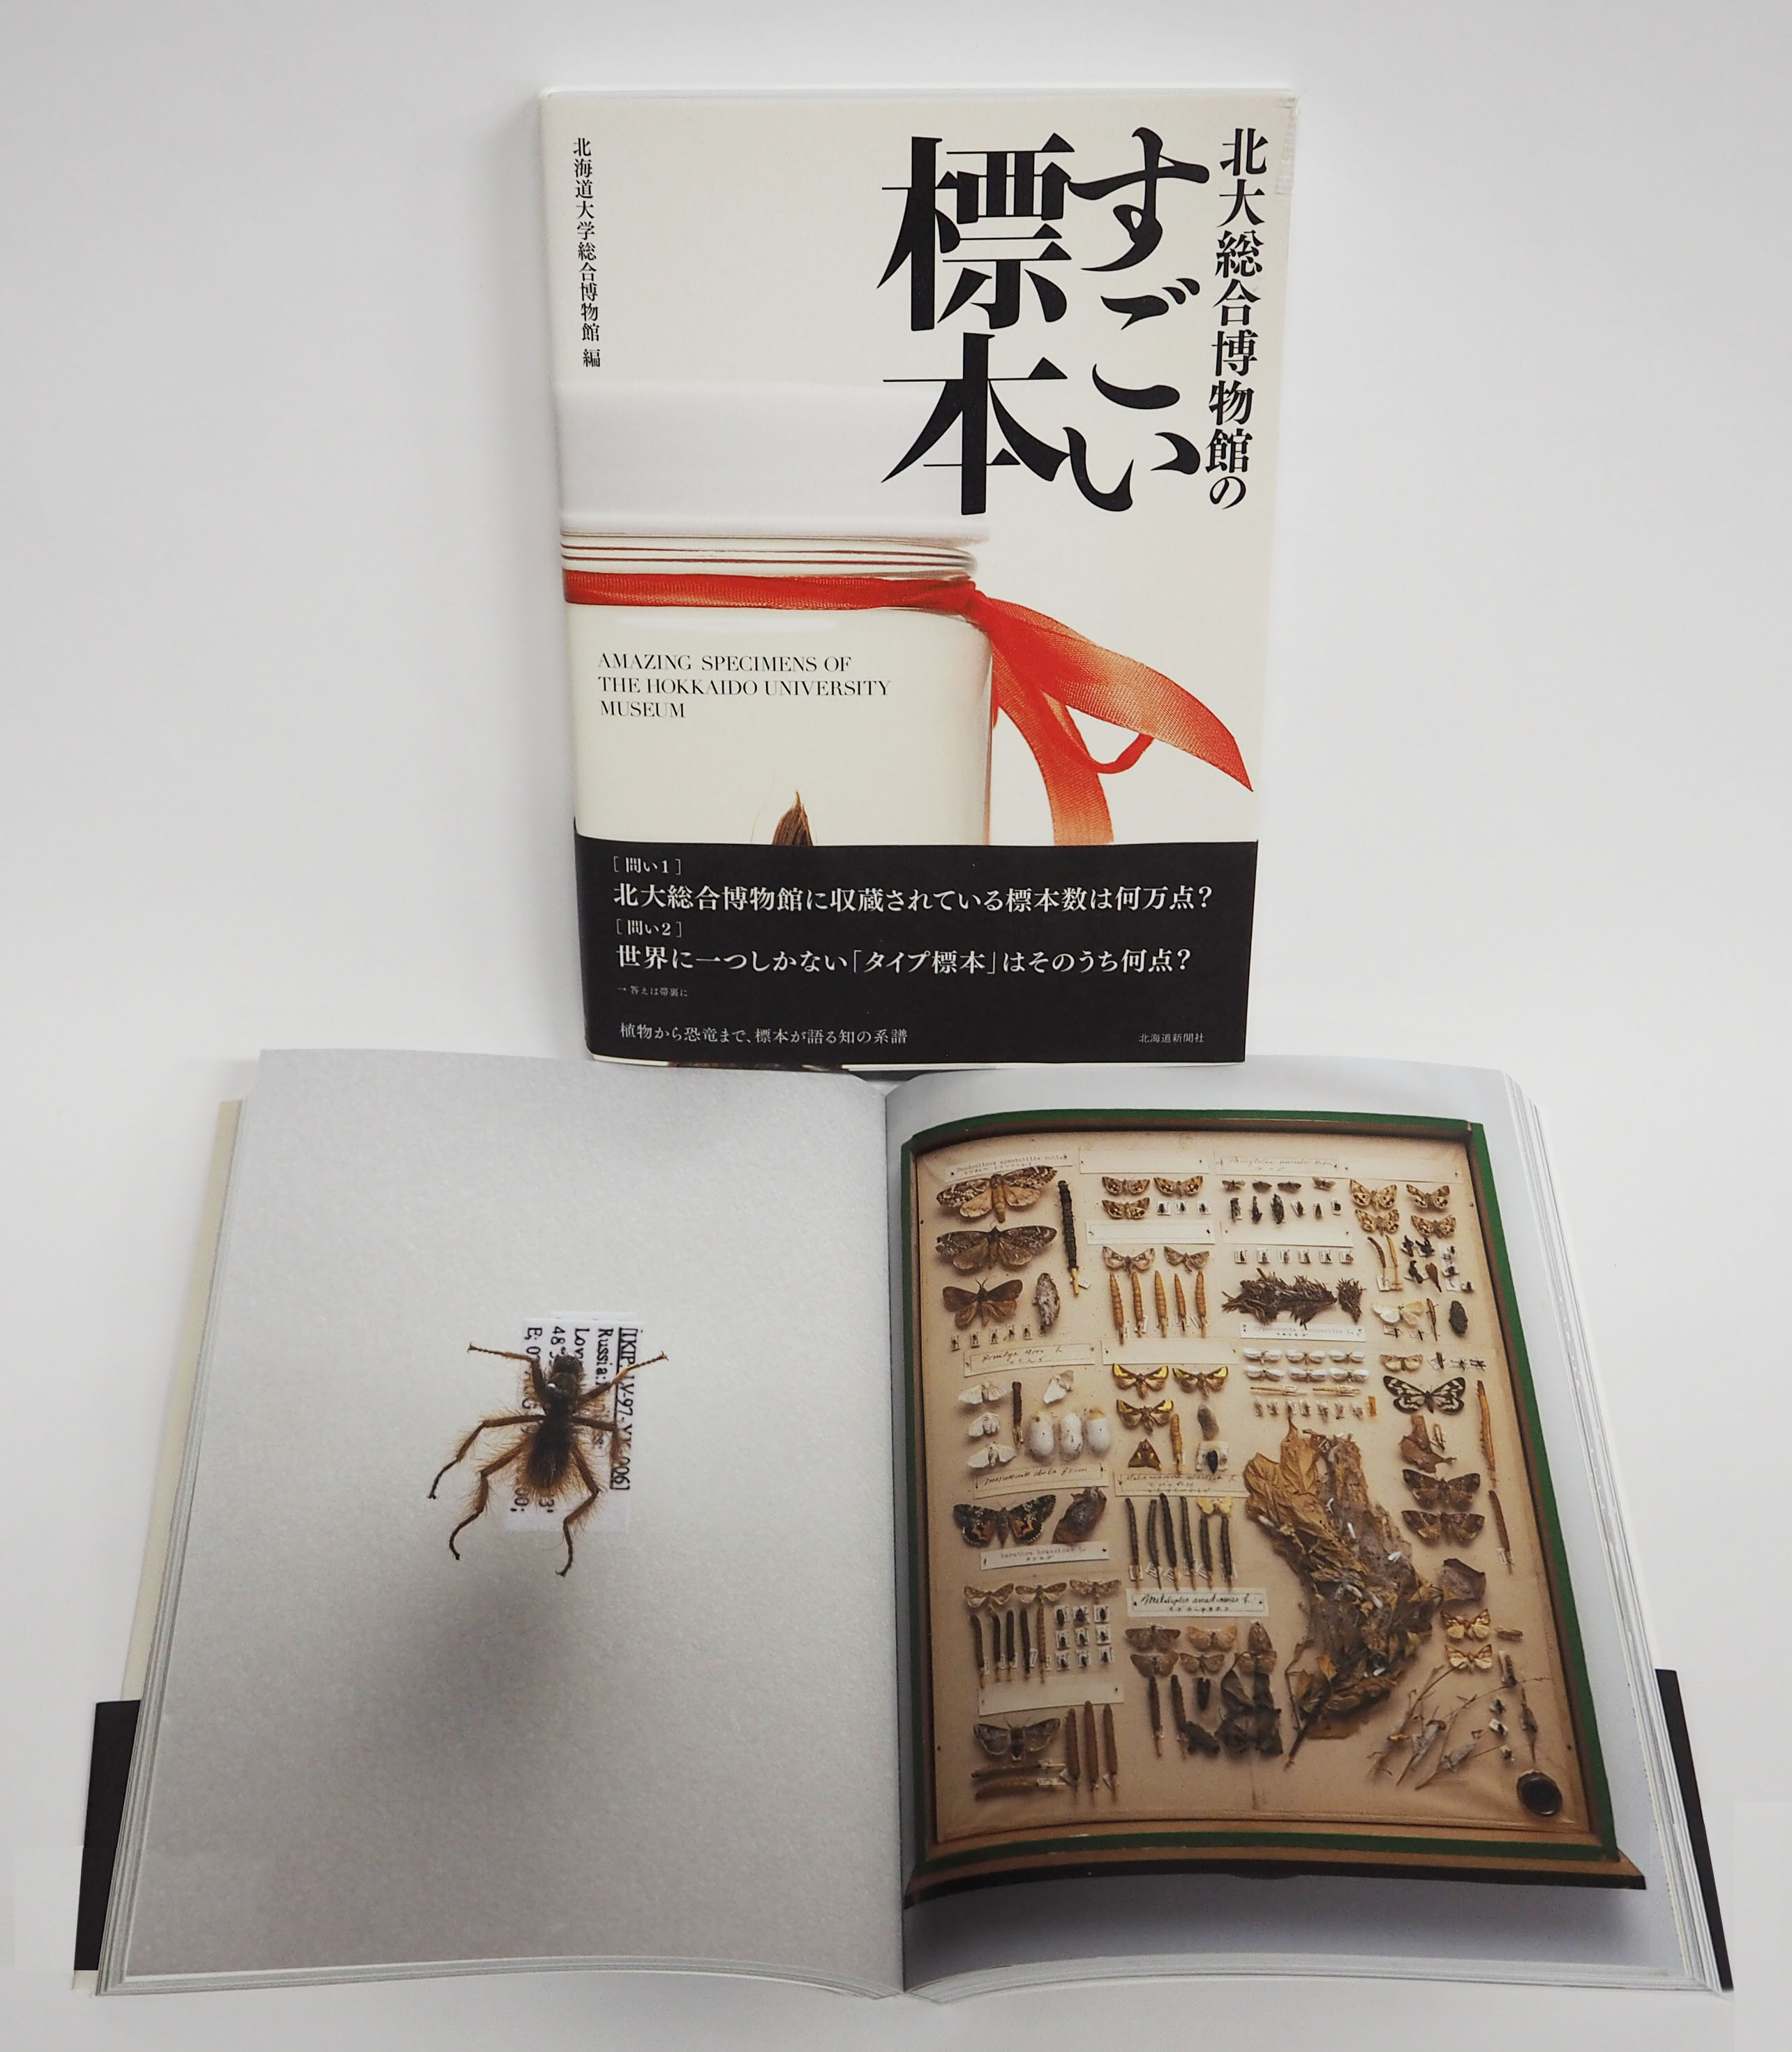 北大総合博物館のすごい標本 発刊のお知らせ 北海道大学総合博物館